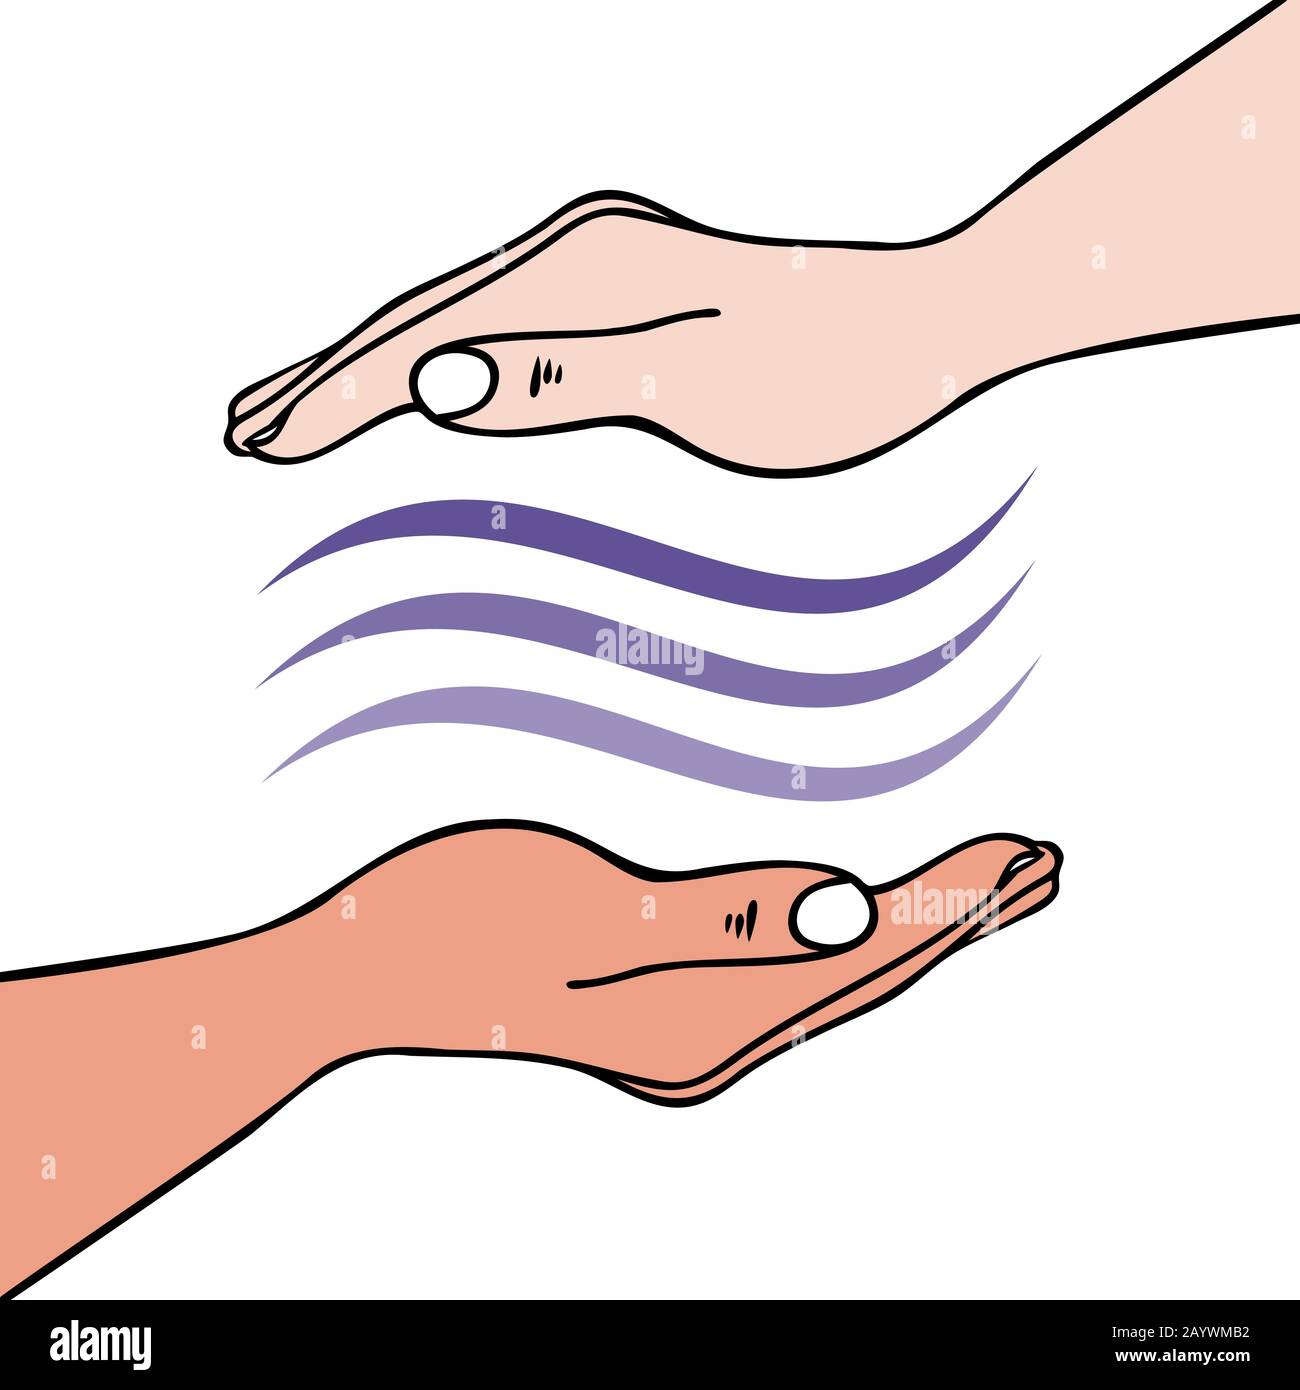 Curación manos-en mostrando mano enviando ondas de energía univeral para la curación emocional o física - para Reiki, Medicina alternativa Ilustración del Vector